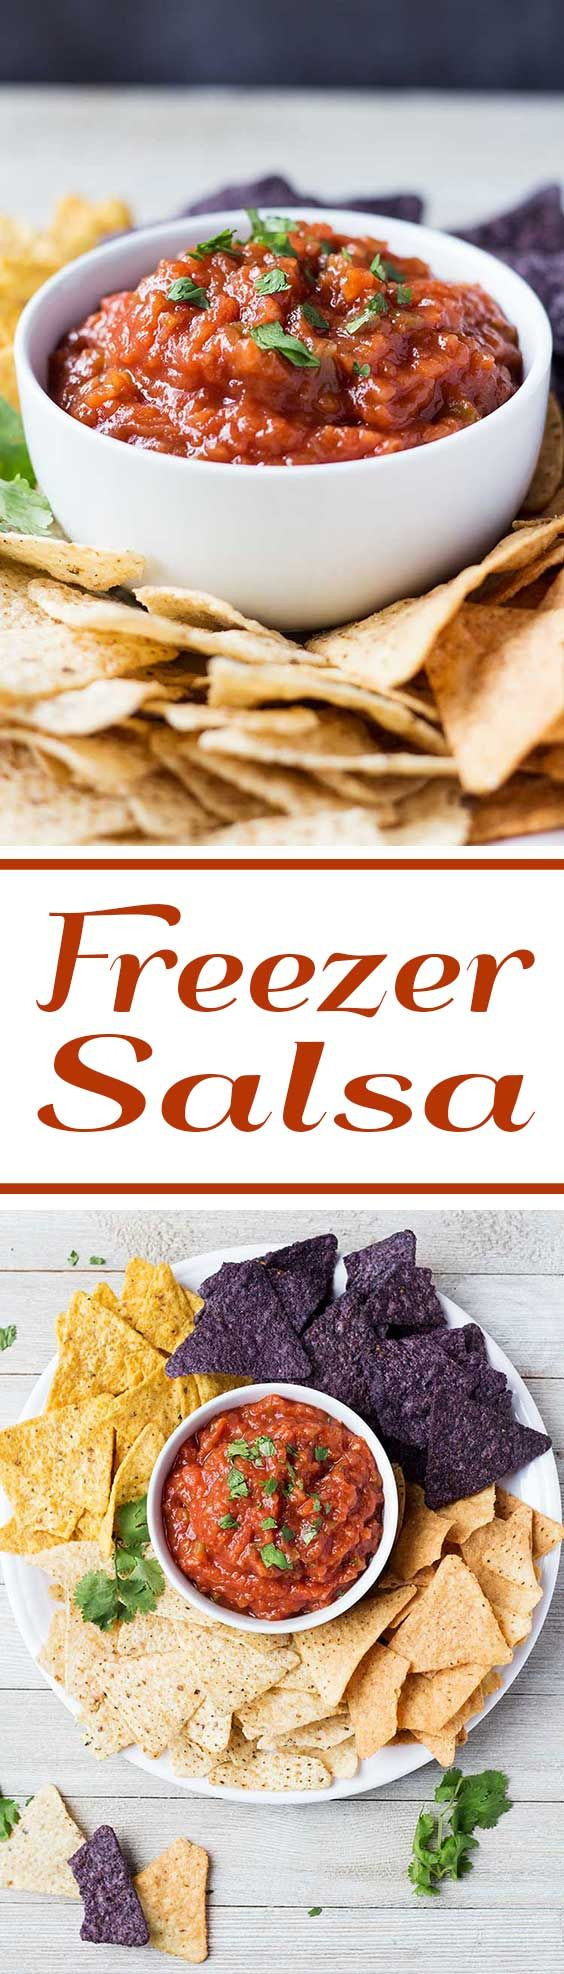 Freezer Salsa Recipe
 Freezer Salsa Recipe